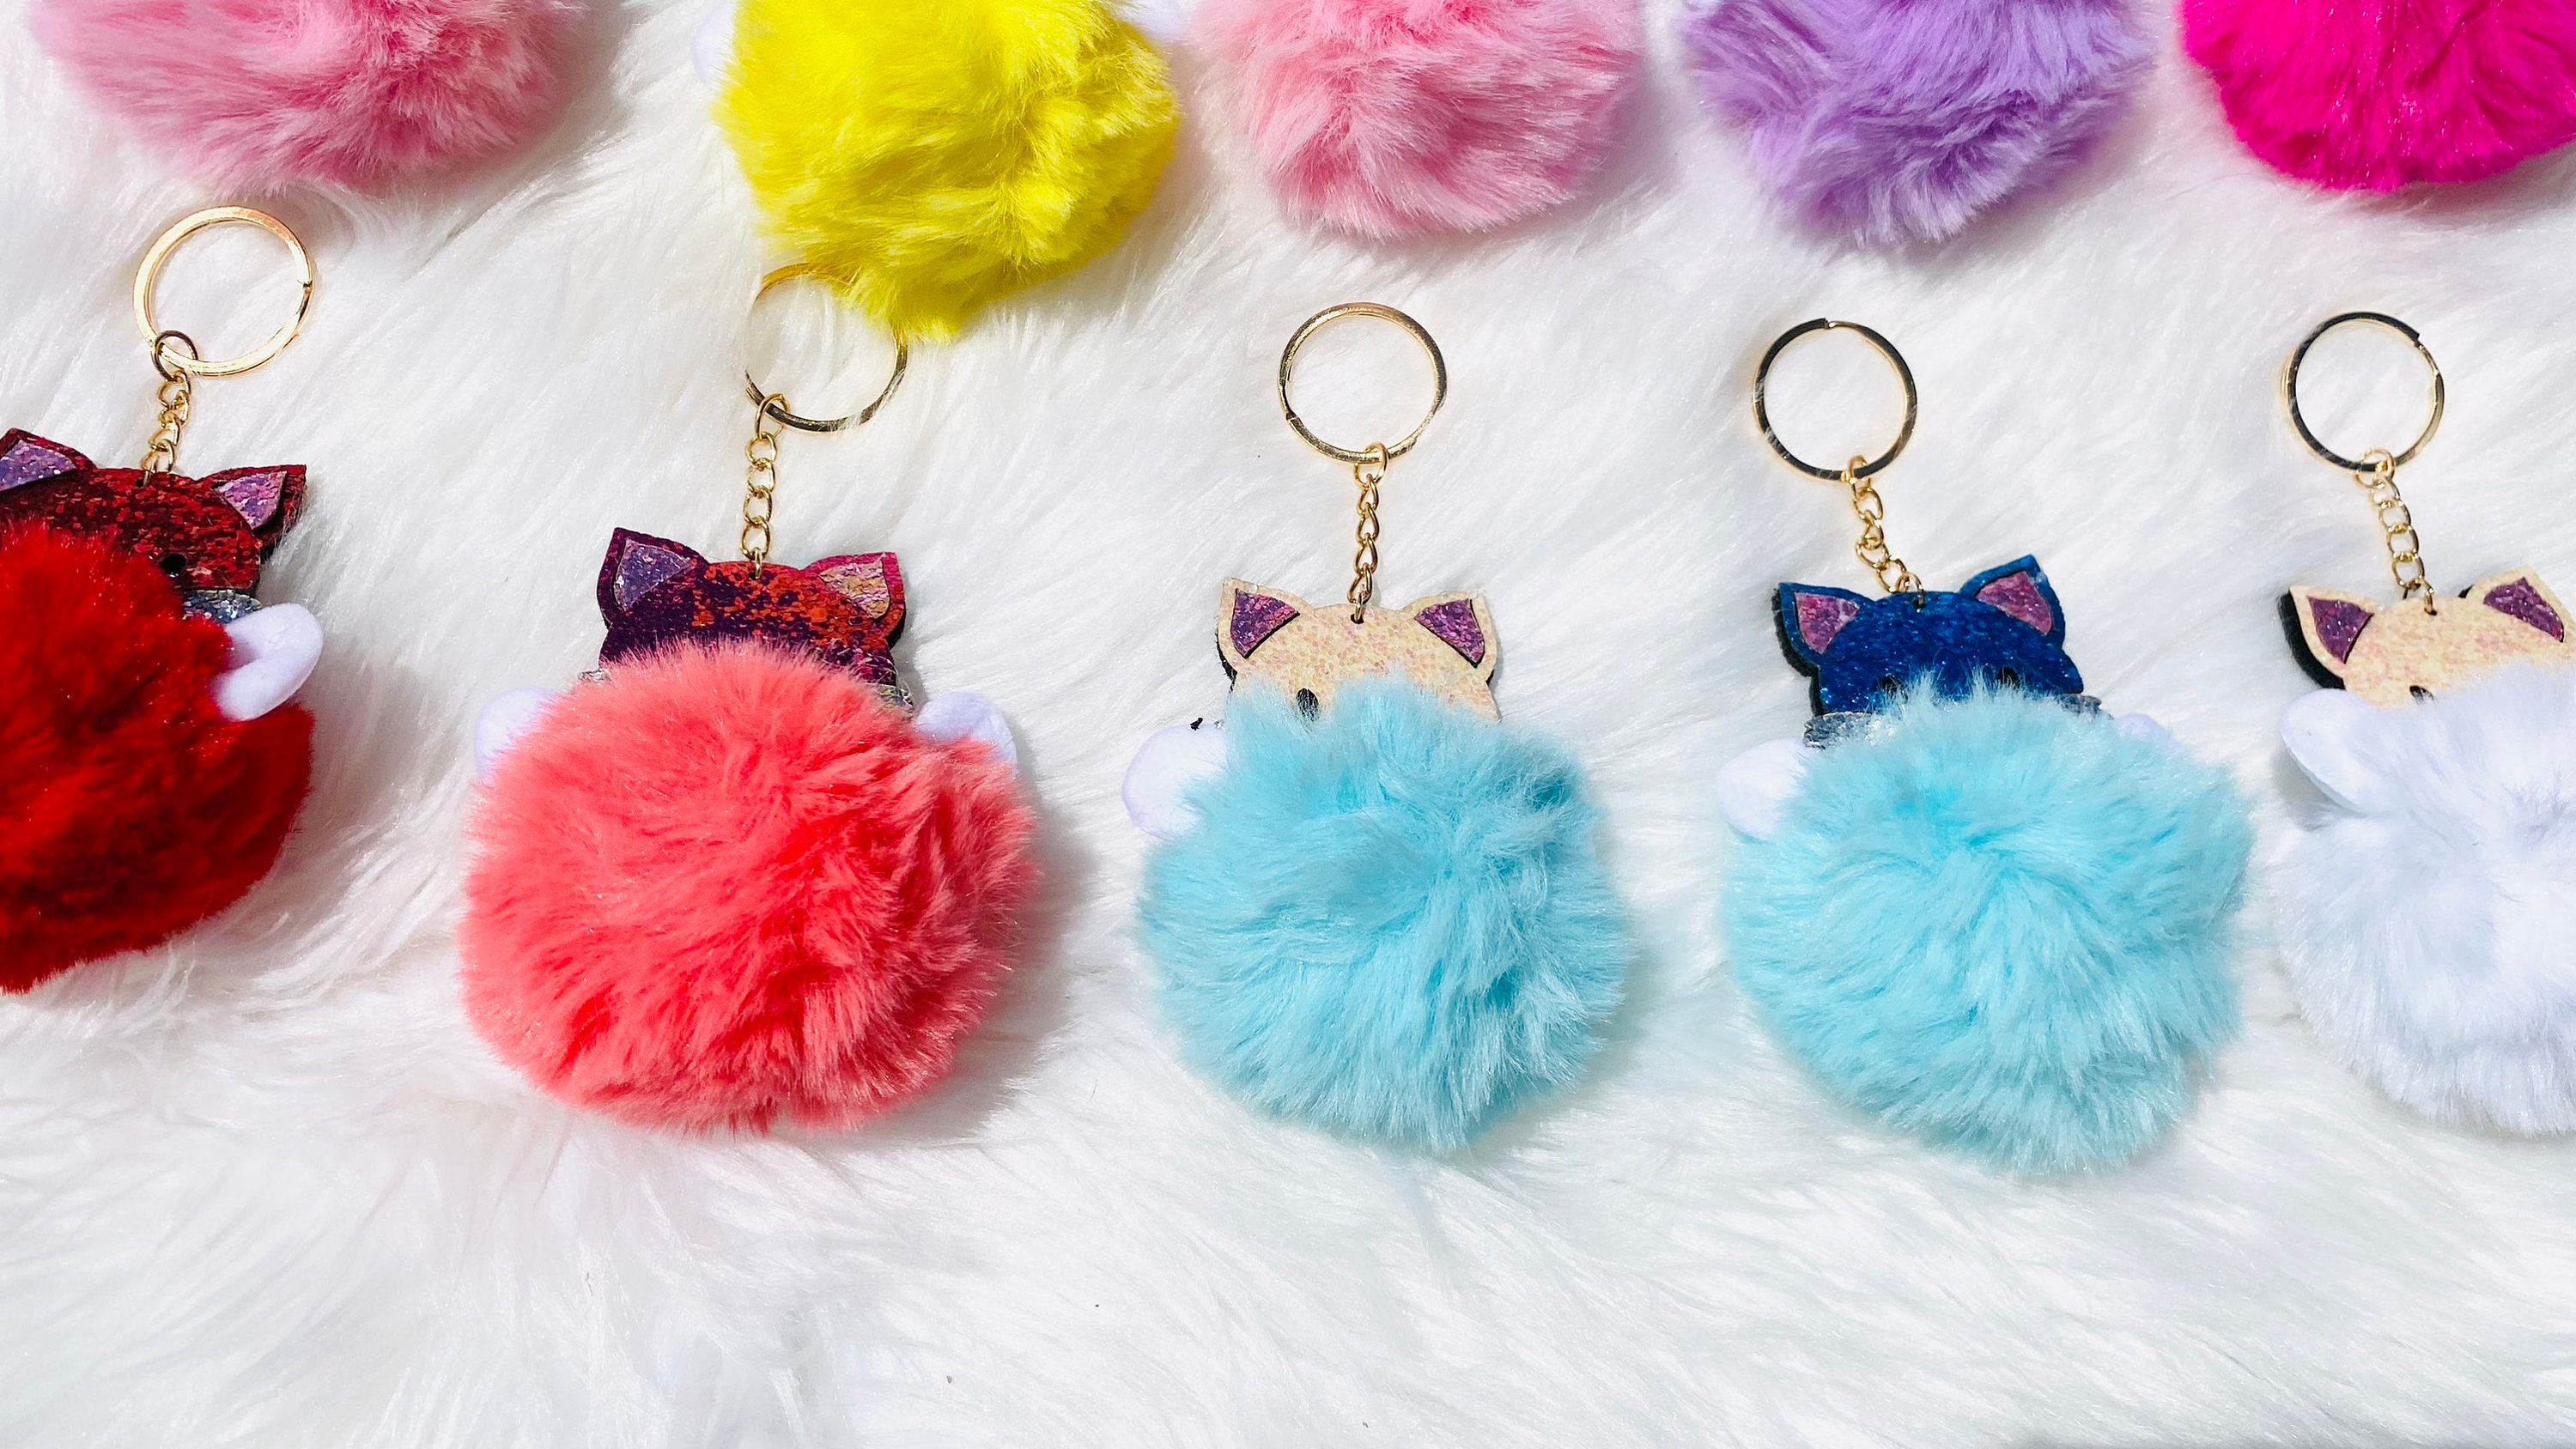 Pom Pom Kitty Keychains Cute Kitty Pom Pom Keychains Glitter 